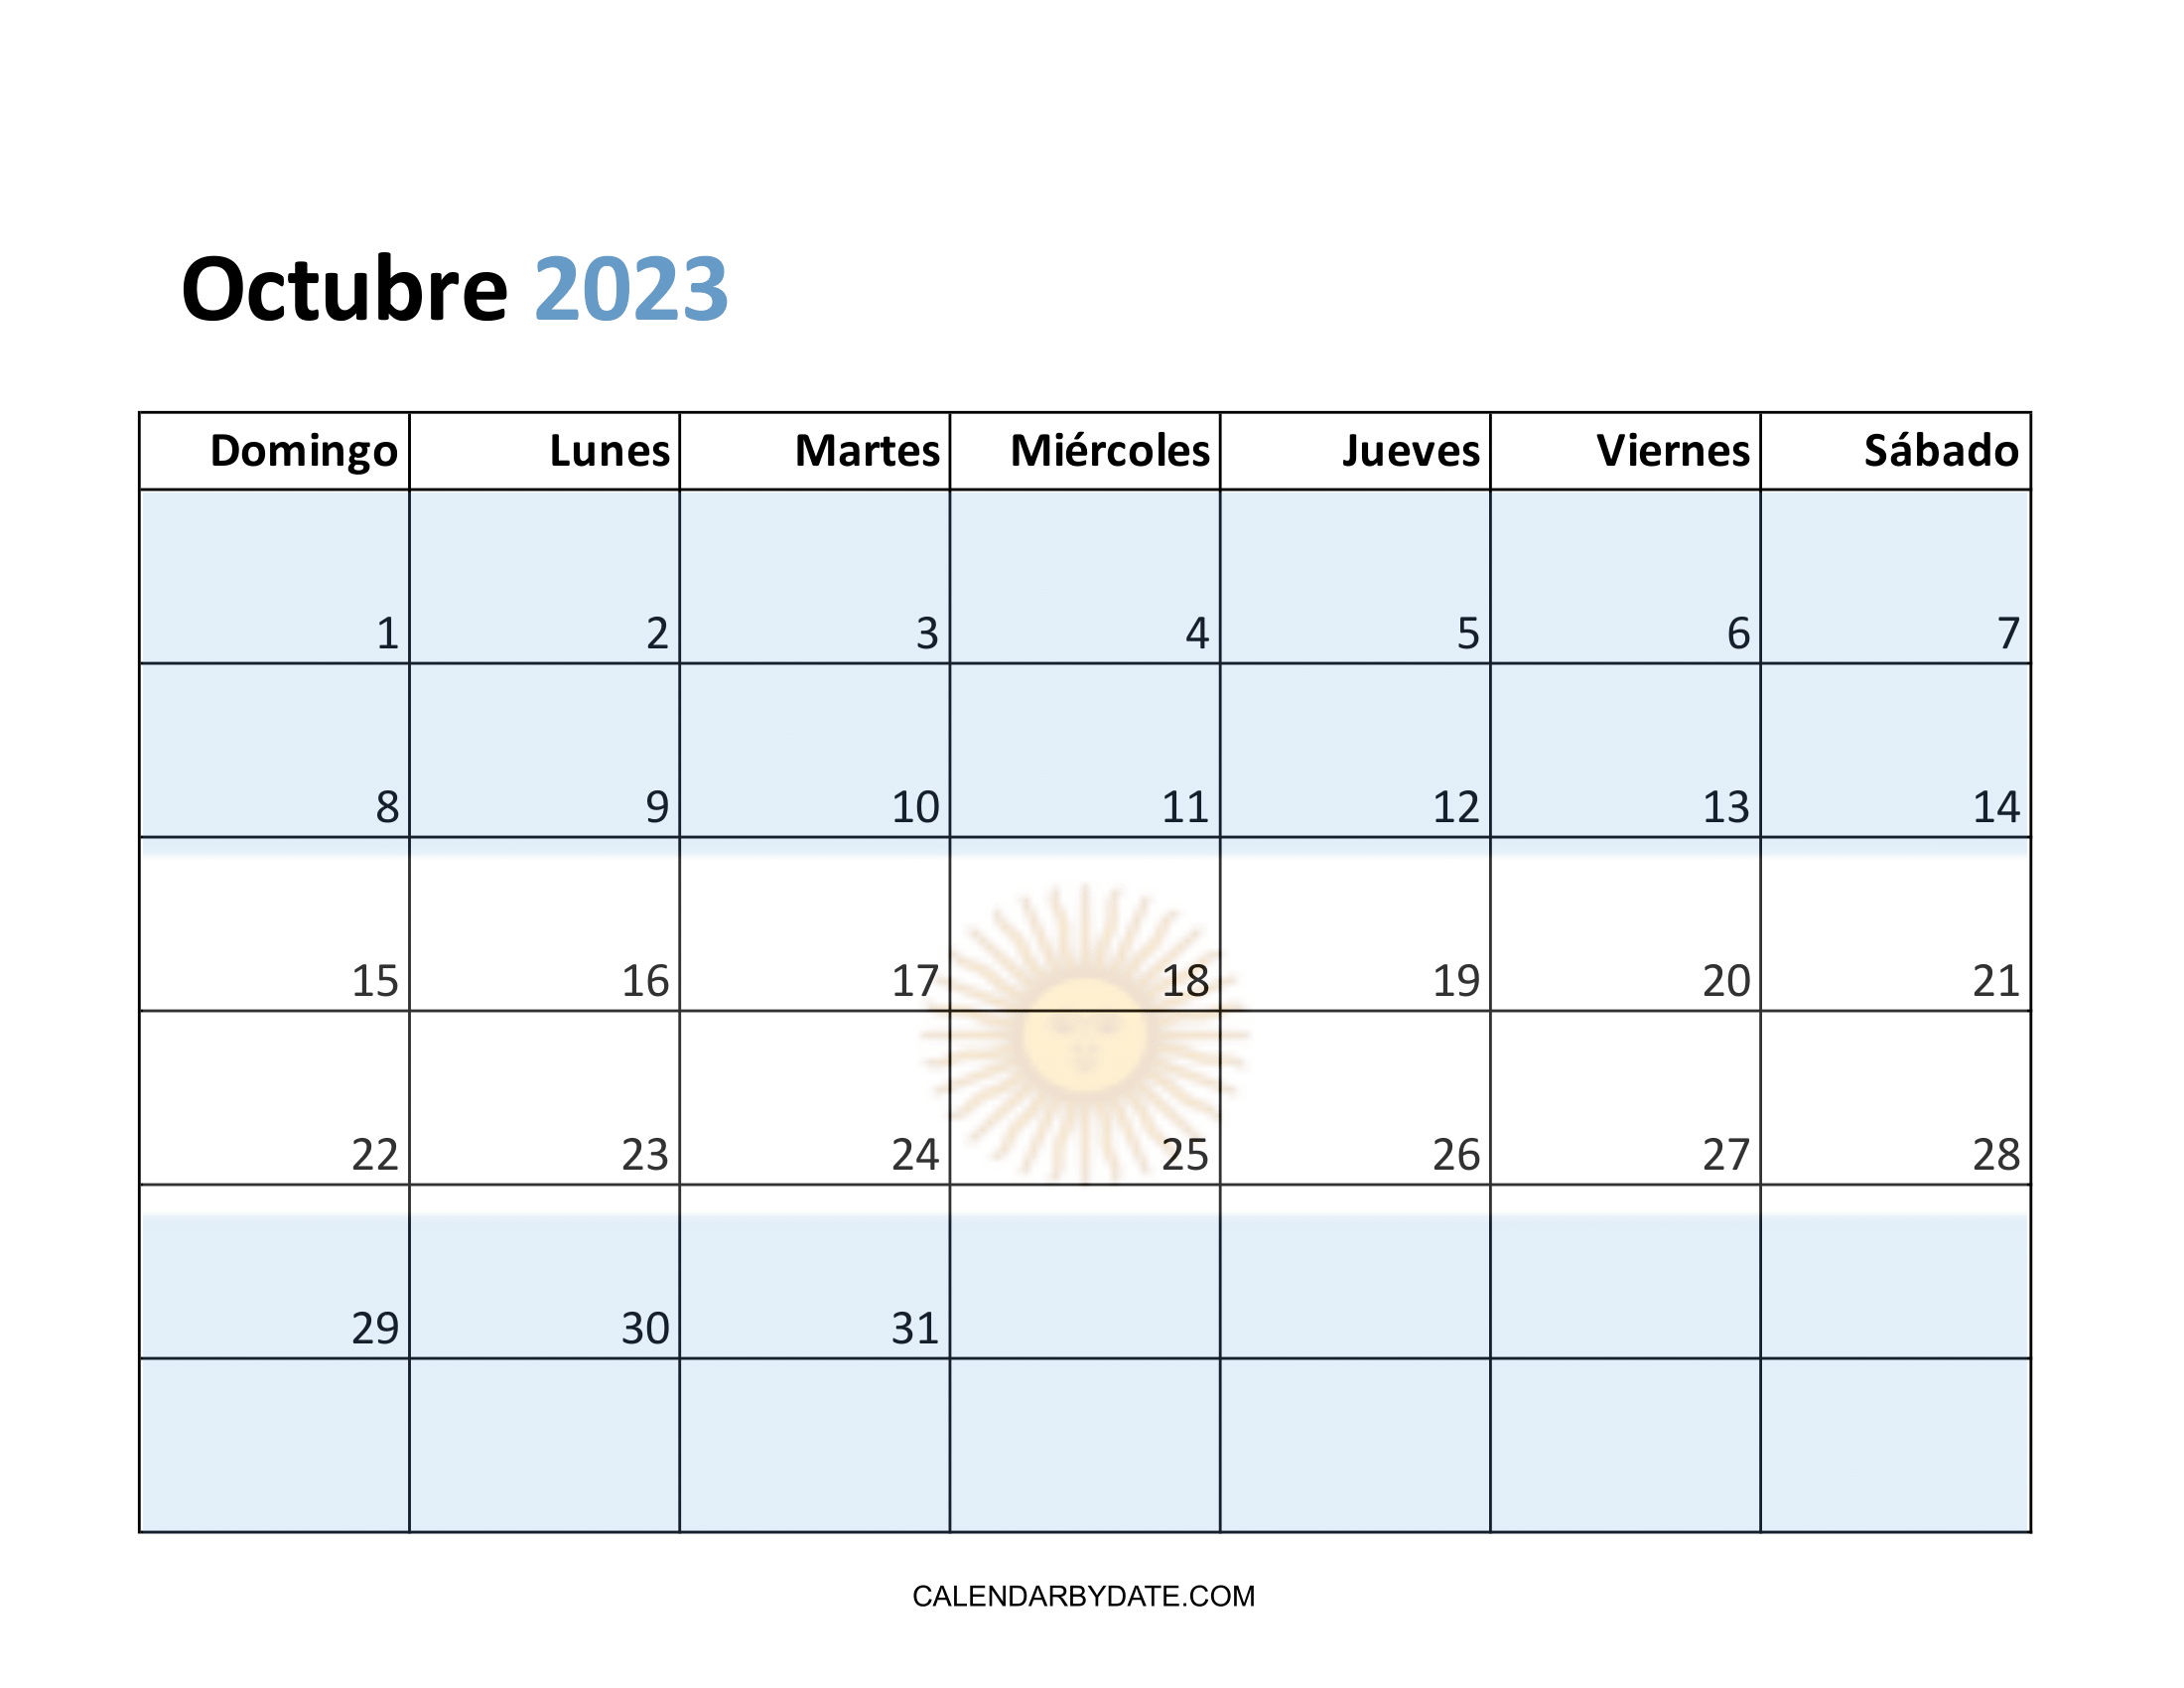 La imagen imprimible del calendario de octubre de 2023 se está diseñando en un diseño horizontal con la bandera Argentina. Las vacaciones y los festivales también se mencionan en la cuadrícula del calendario.